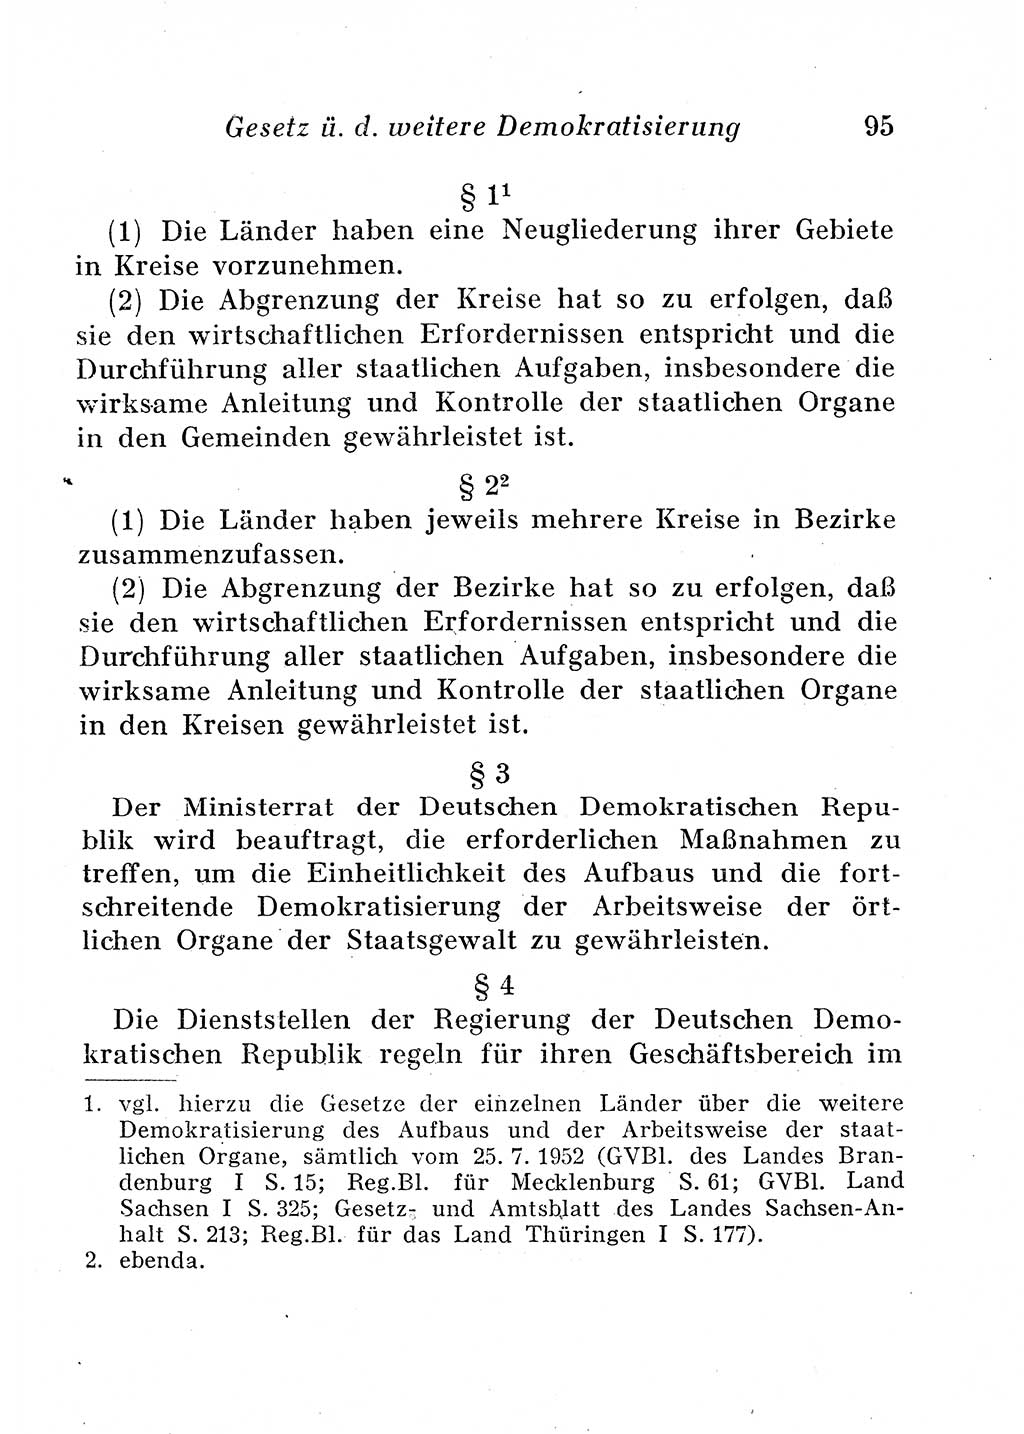 Staats- und verwaltungsrechtliche Gesetze der Deutschen Demokratischen Republik (DDR) 1958, Seite 95 (StVerwR Ges. DDR 1958, S. 95)